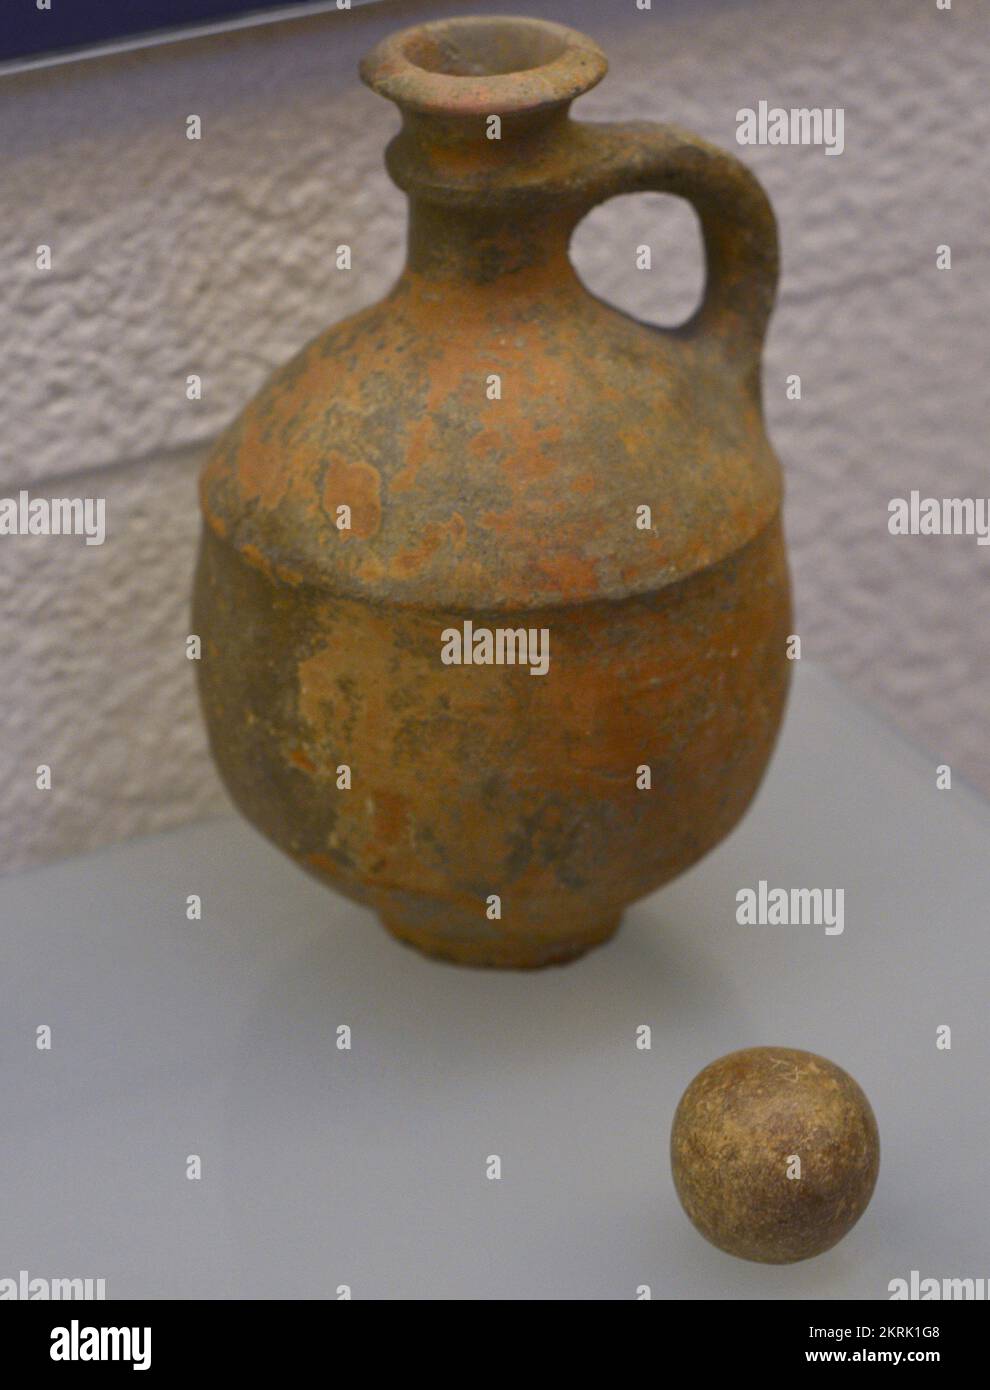 Carafe à vin (800-700 BC). Céramique. Poids numérique (800-600 BC). Pierre. Musée sépharade. Tolède. Castille-la Manche. Espagne. Banque D'Images